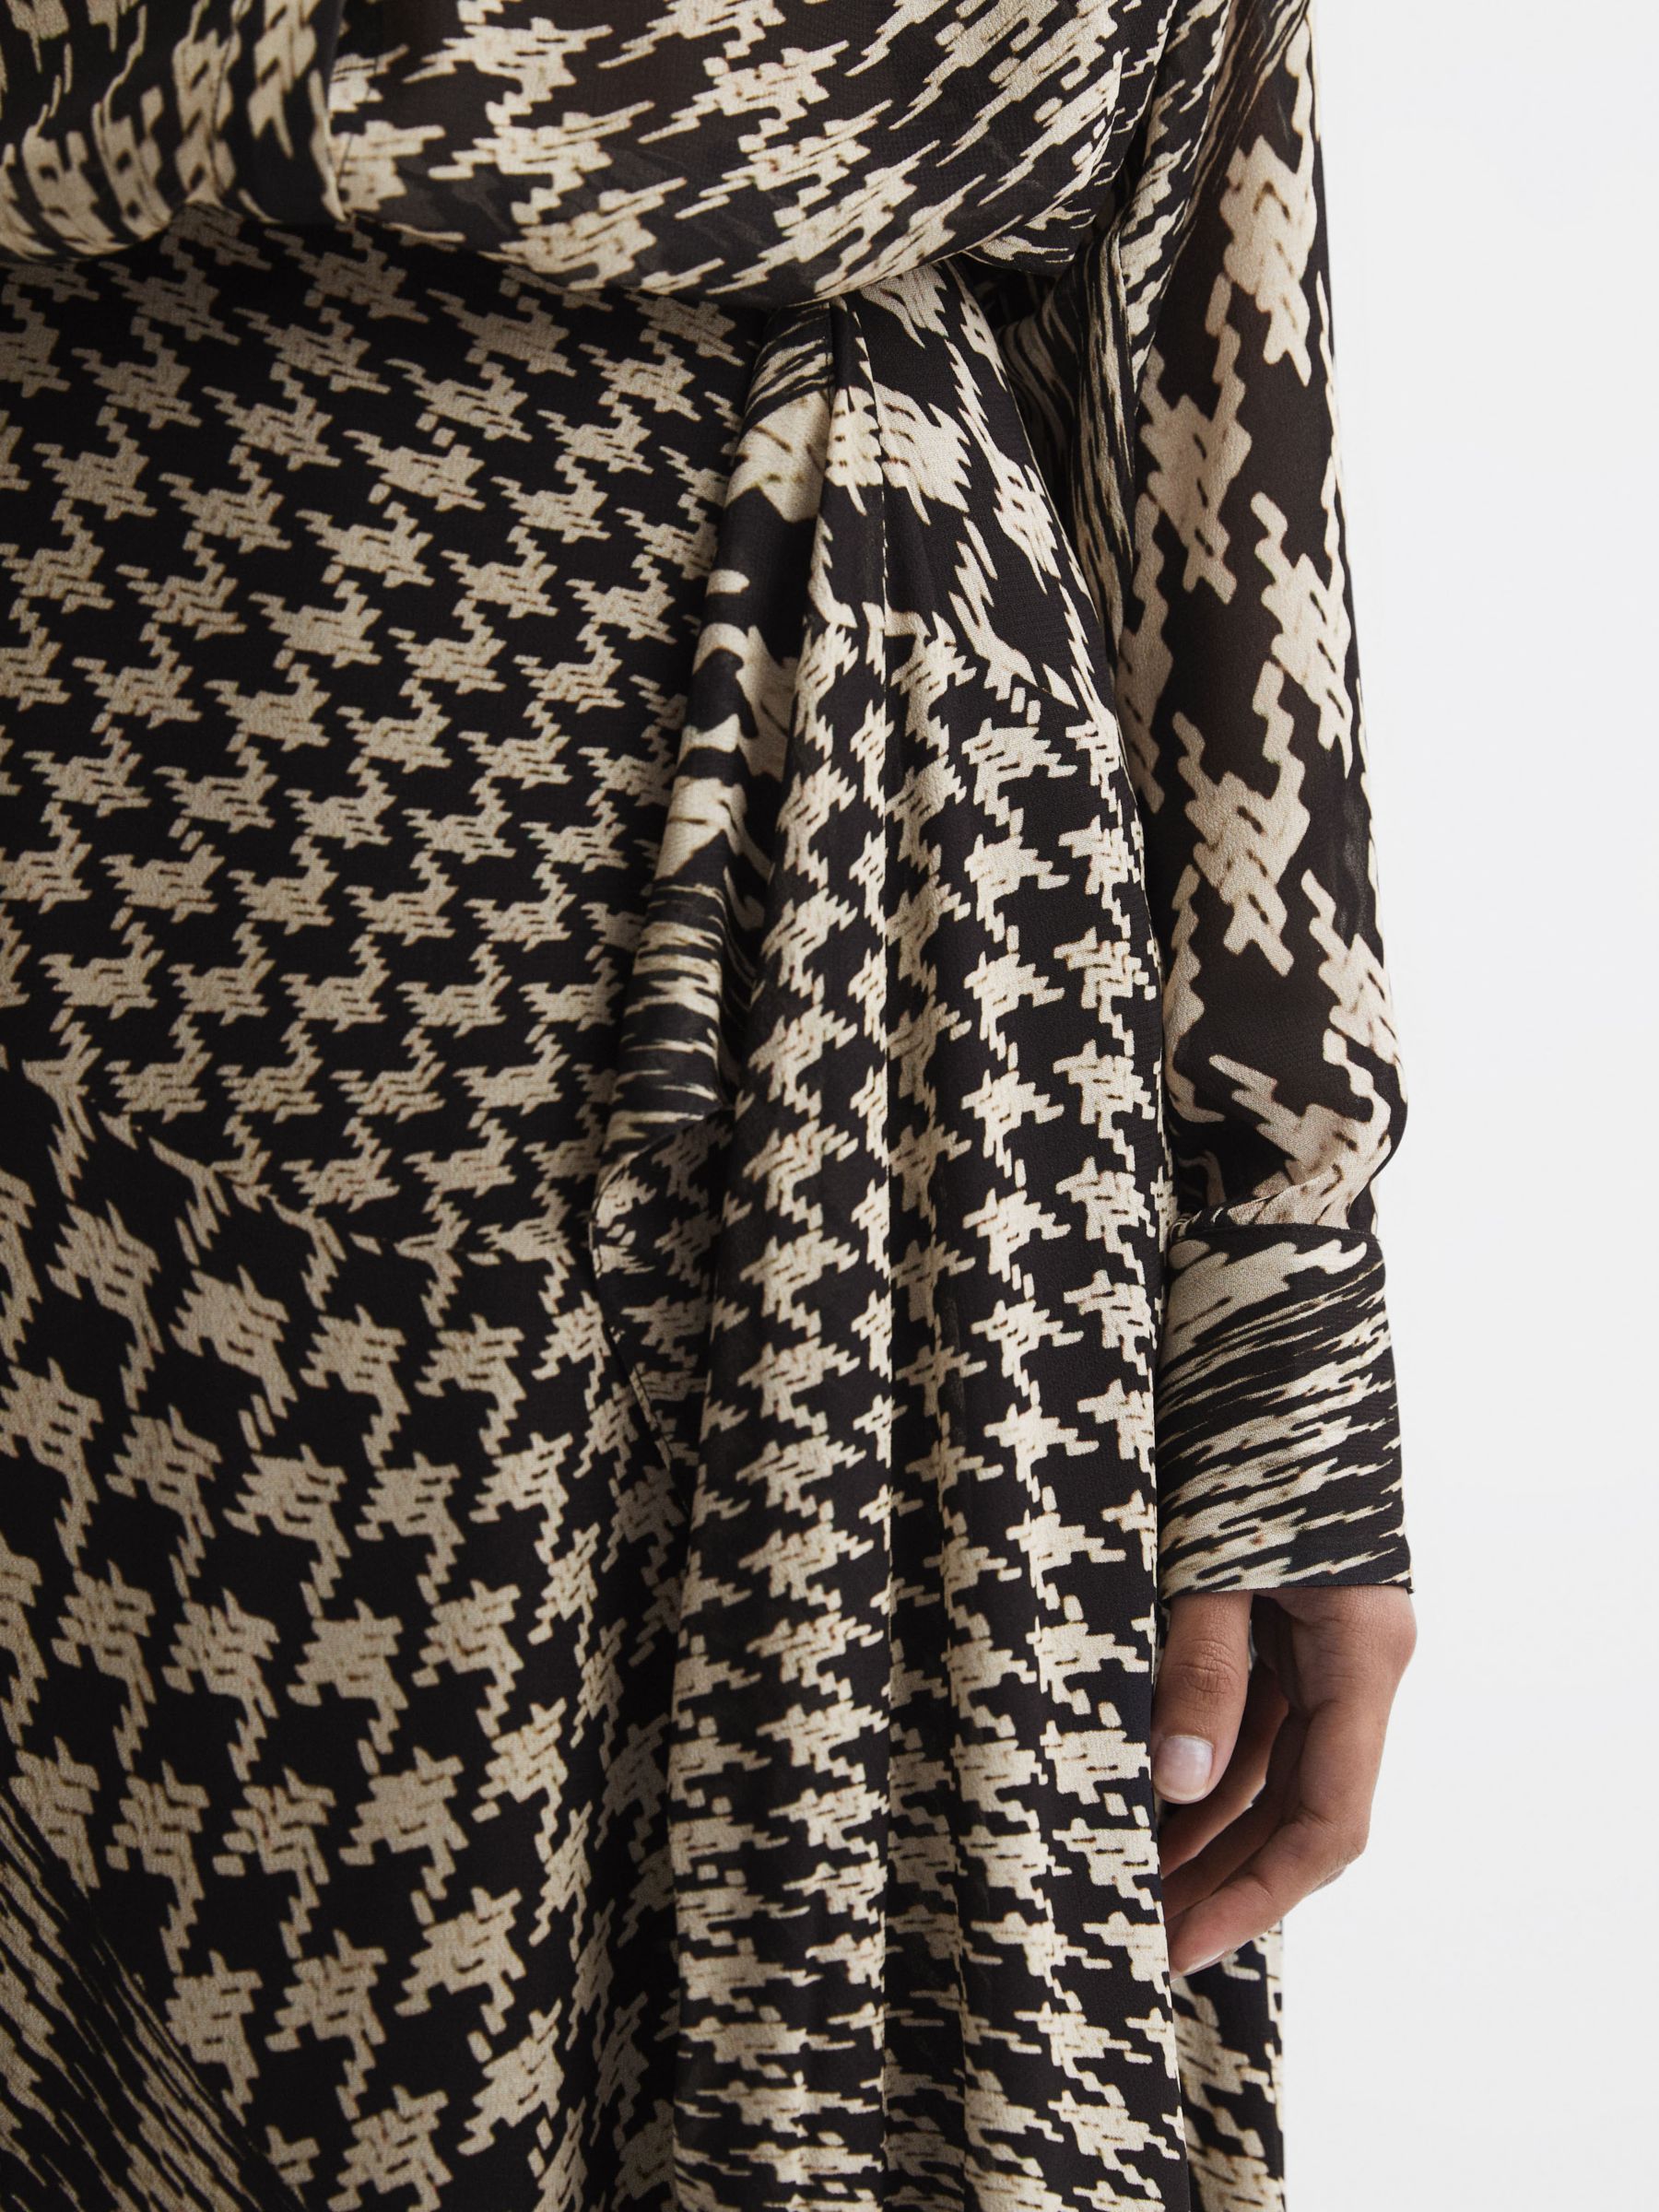 Buy Reiss Oksana Houndstooth Asymmetric Midi Skirt, Black/White Online at johnlewis.com